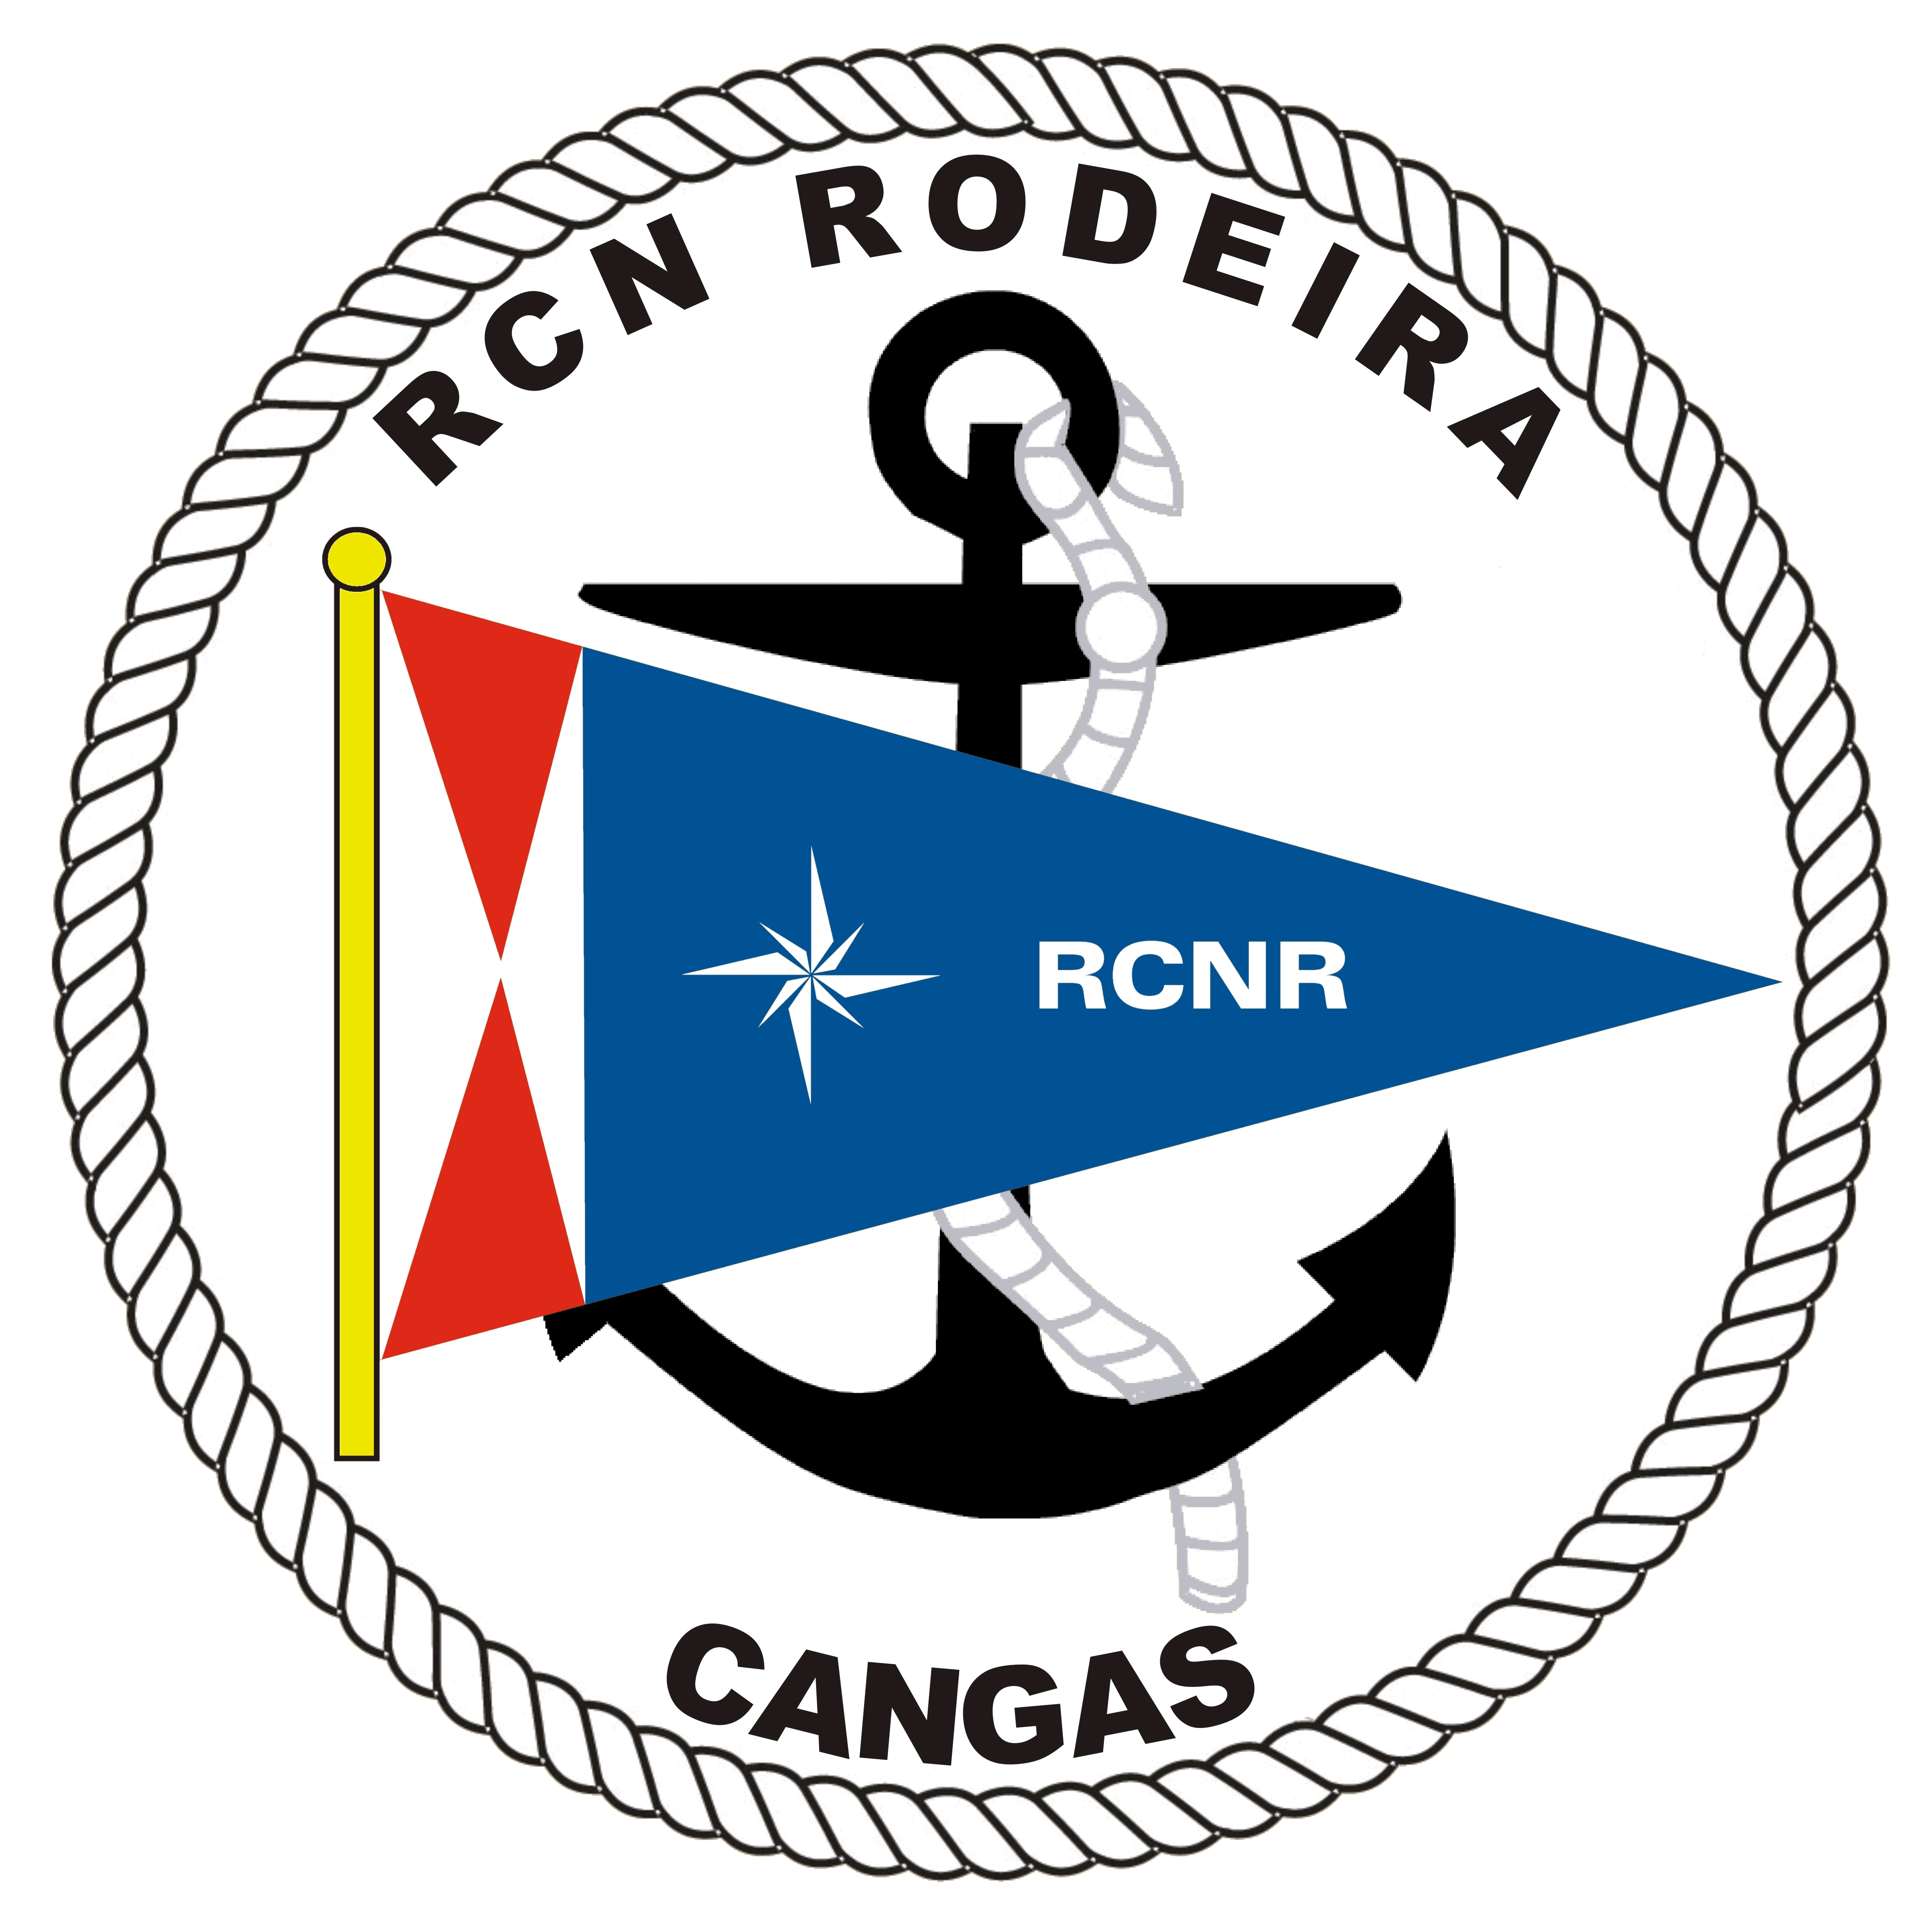 RCN Rodeira